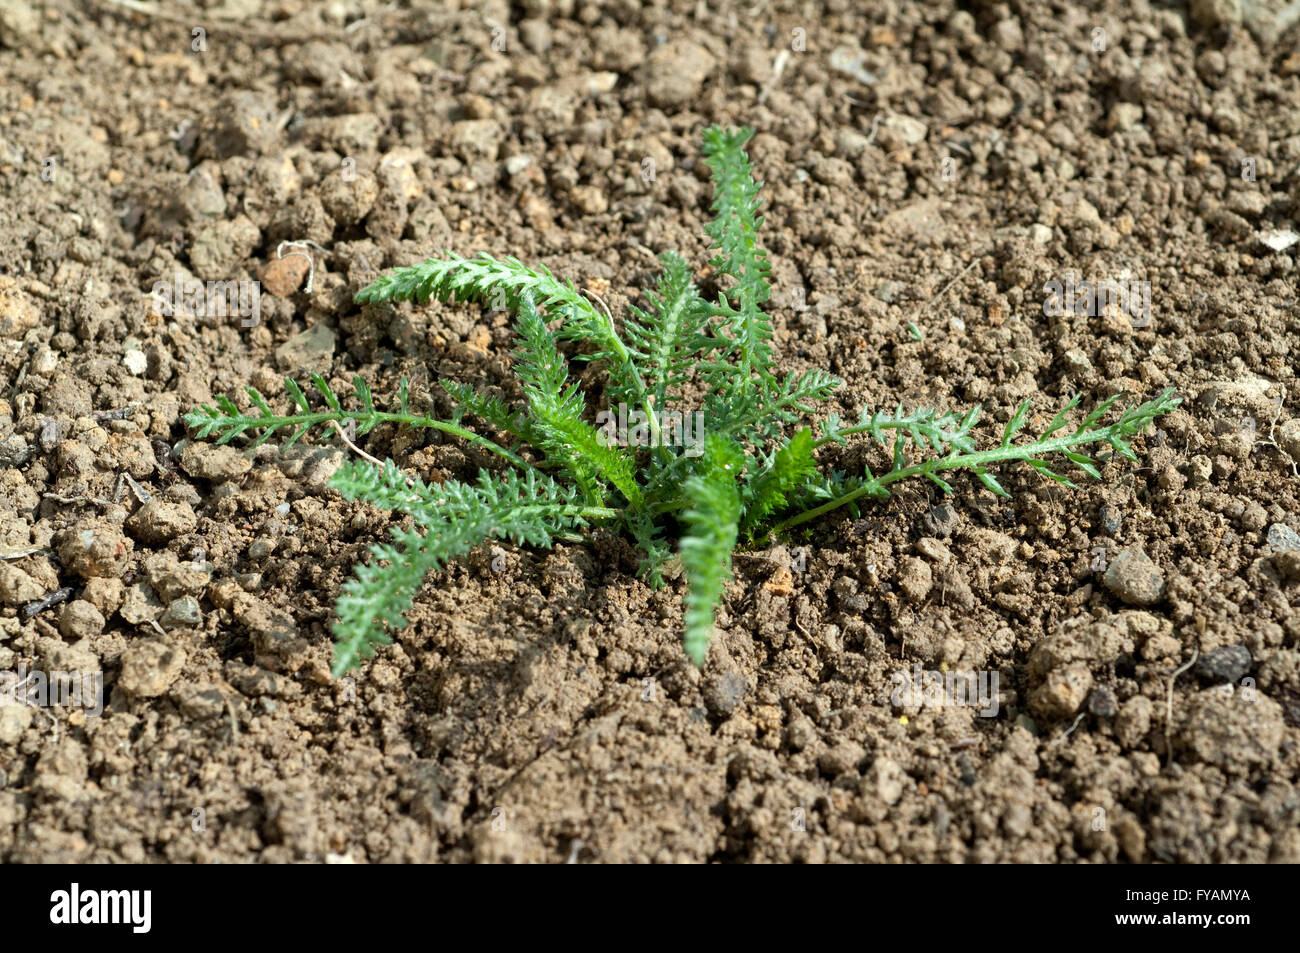 Schafgarbe; Ist eine Heilpflanze und Arzneipflanze, Wildpflanze Stock Photo